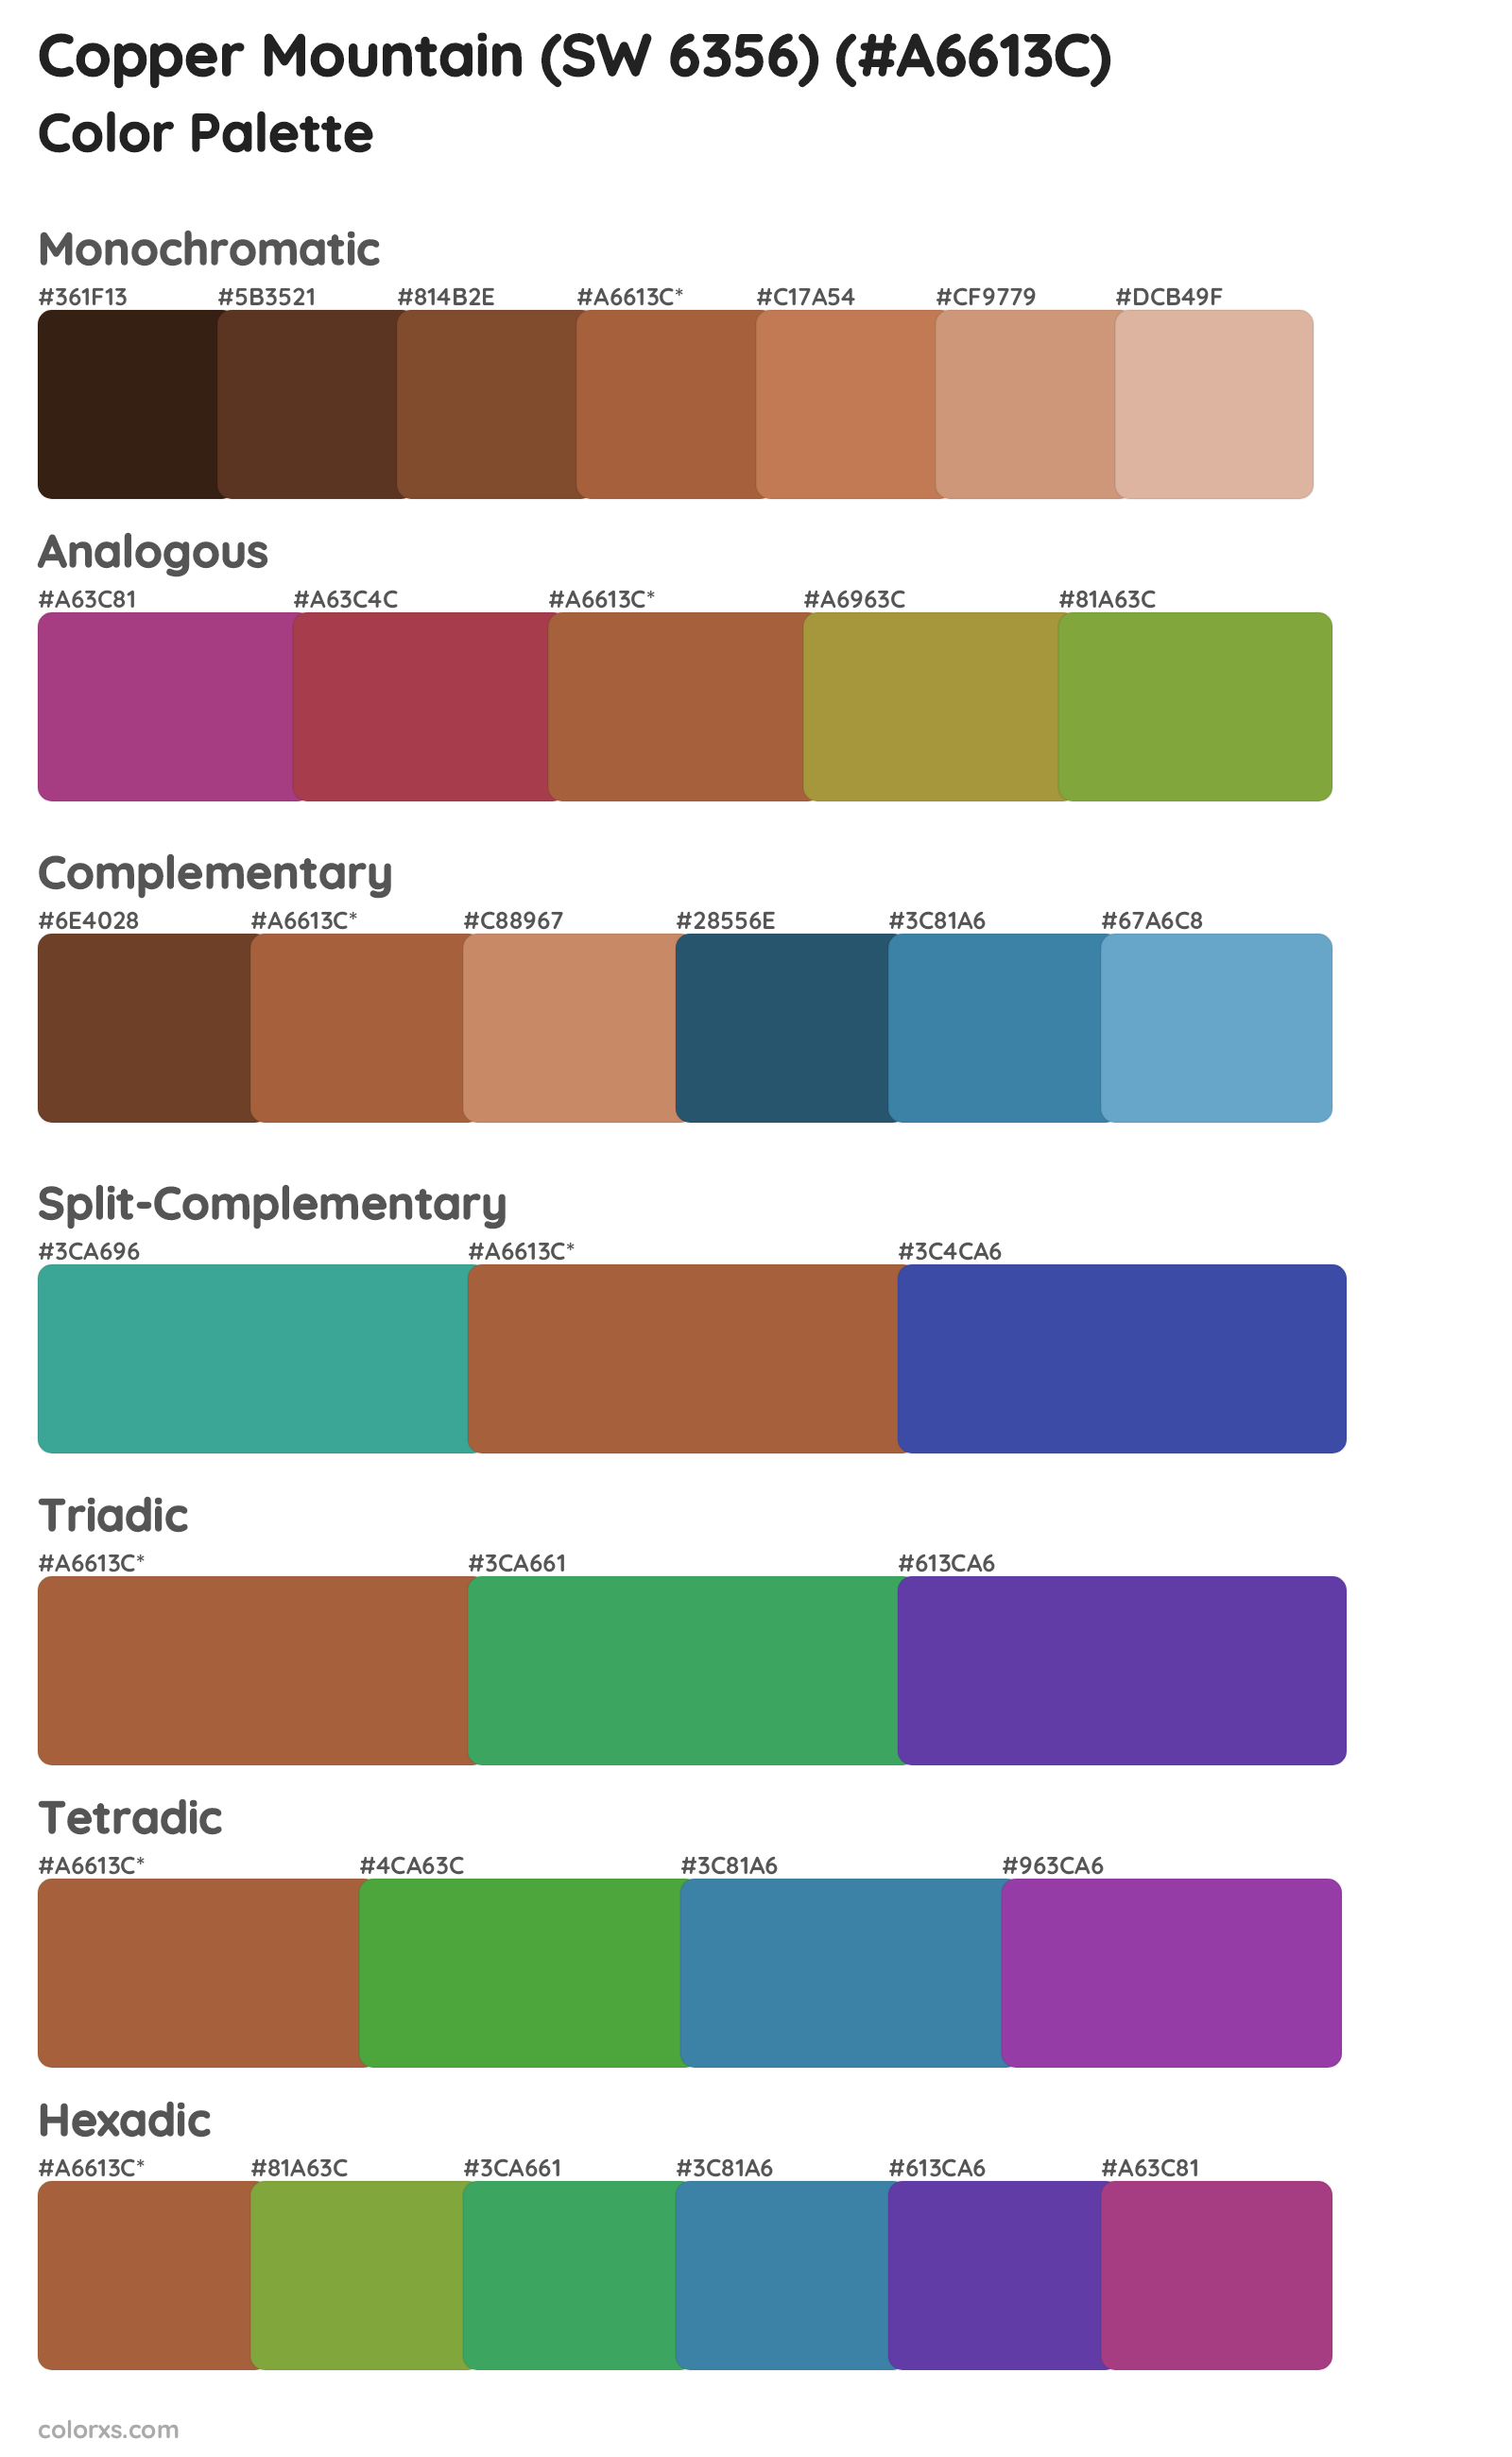 Copper Mountain (SW 6356) Color Scheme Palettes